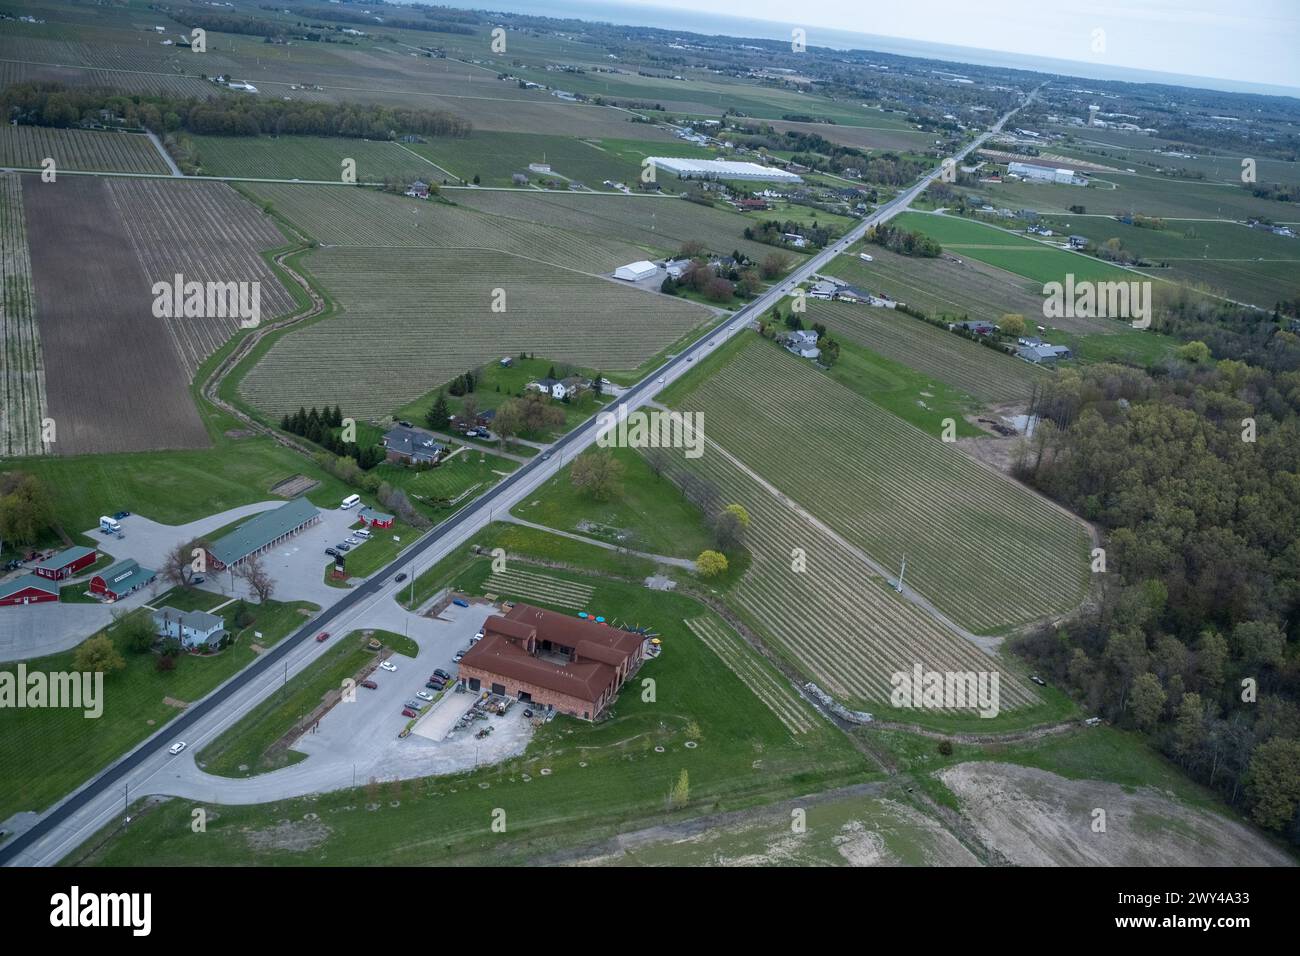 Vue aérienne d'un paysage rural dans la partie sud de la province de l'Ontario connu pour son agriculture et sa viticulture Niagara-on-the-Lake, Canad Banque D'Images